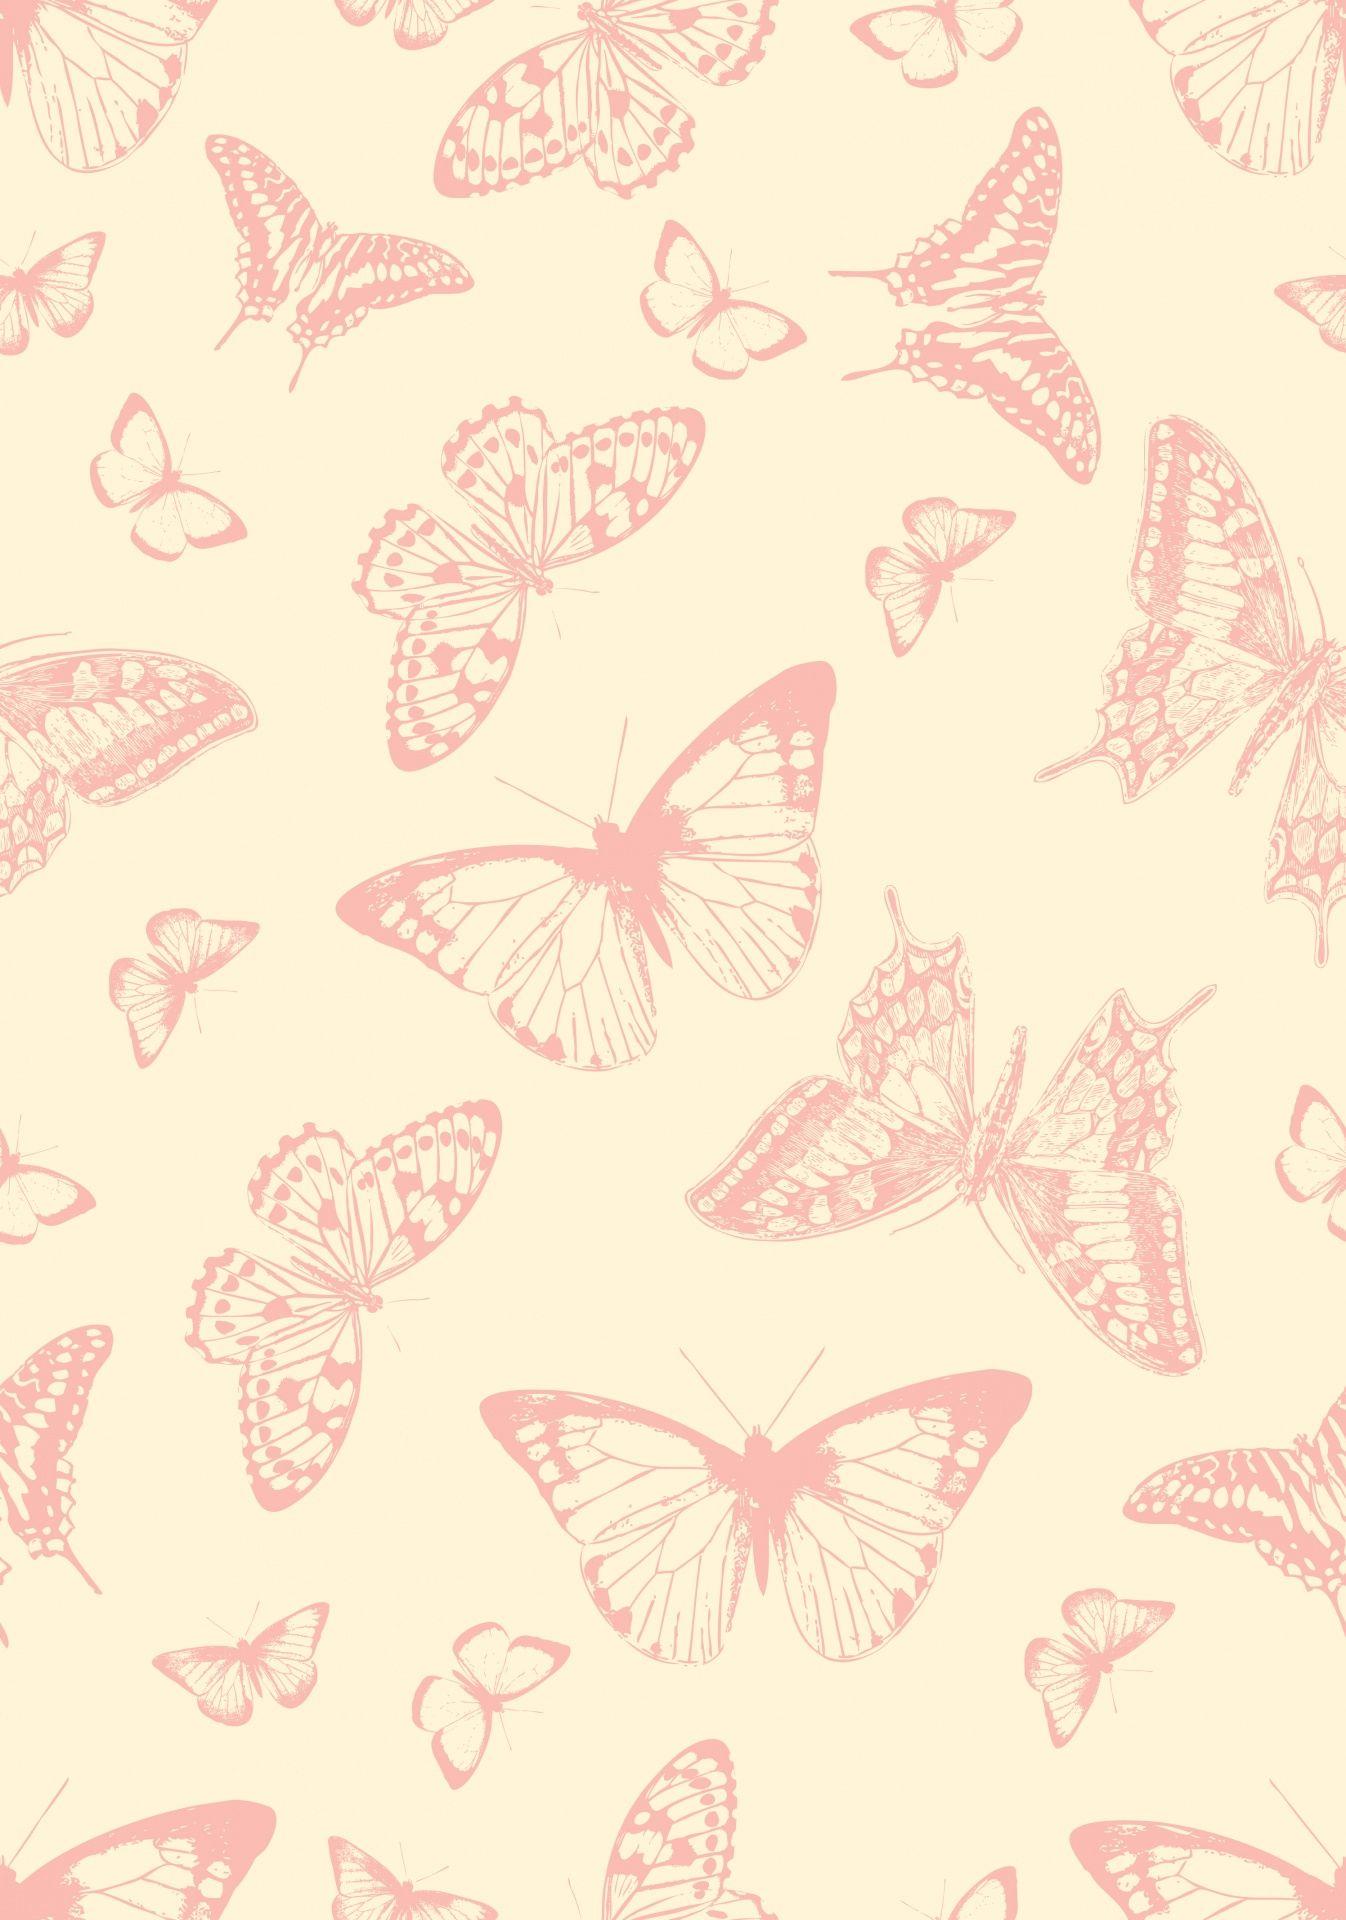 Butterfly Wallpaper Pattern Vintage Free Domain